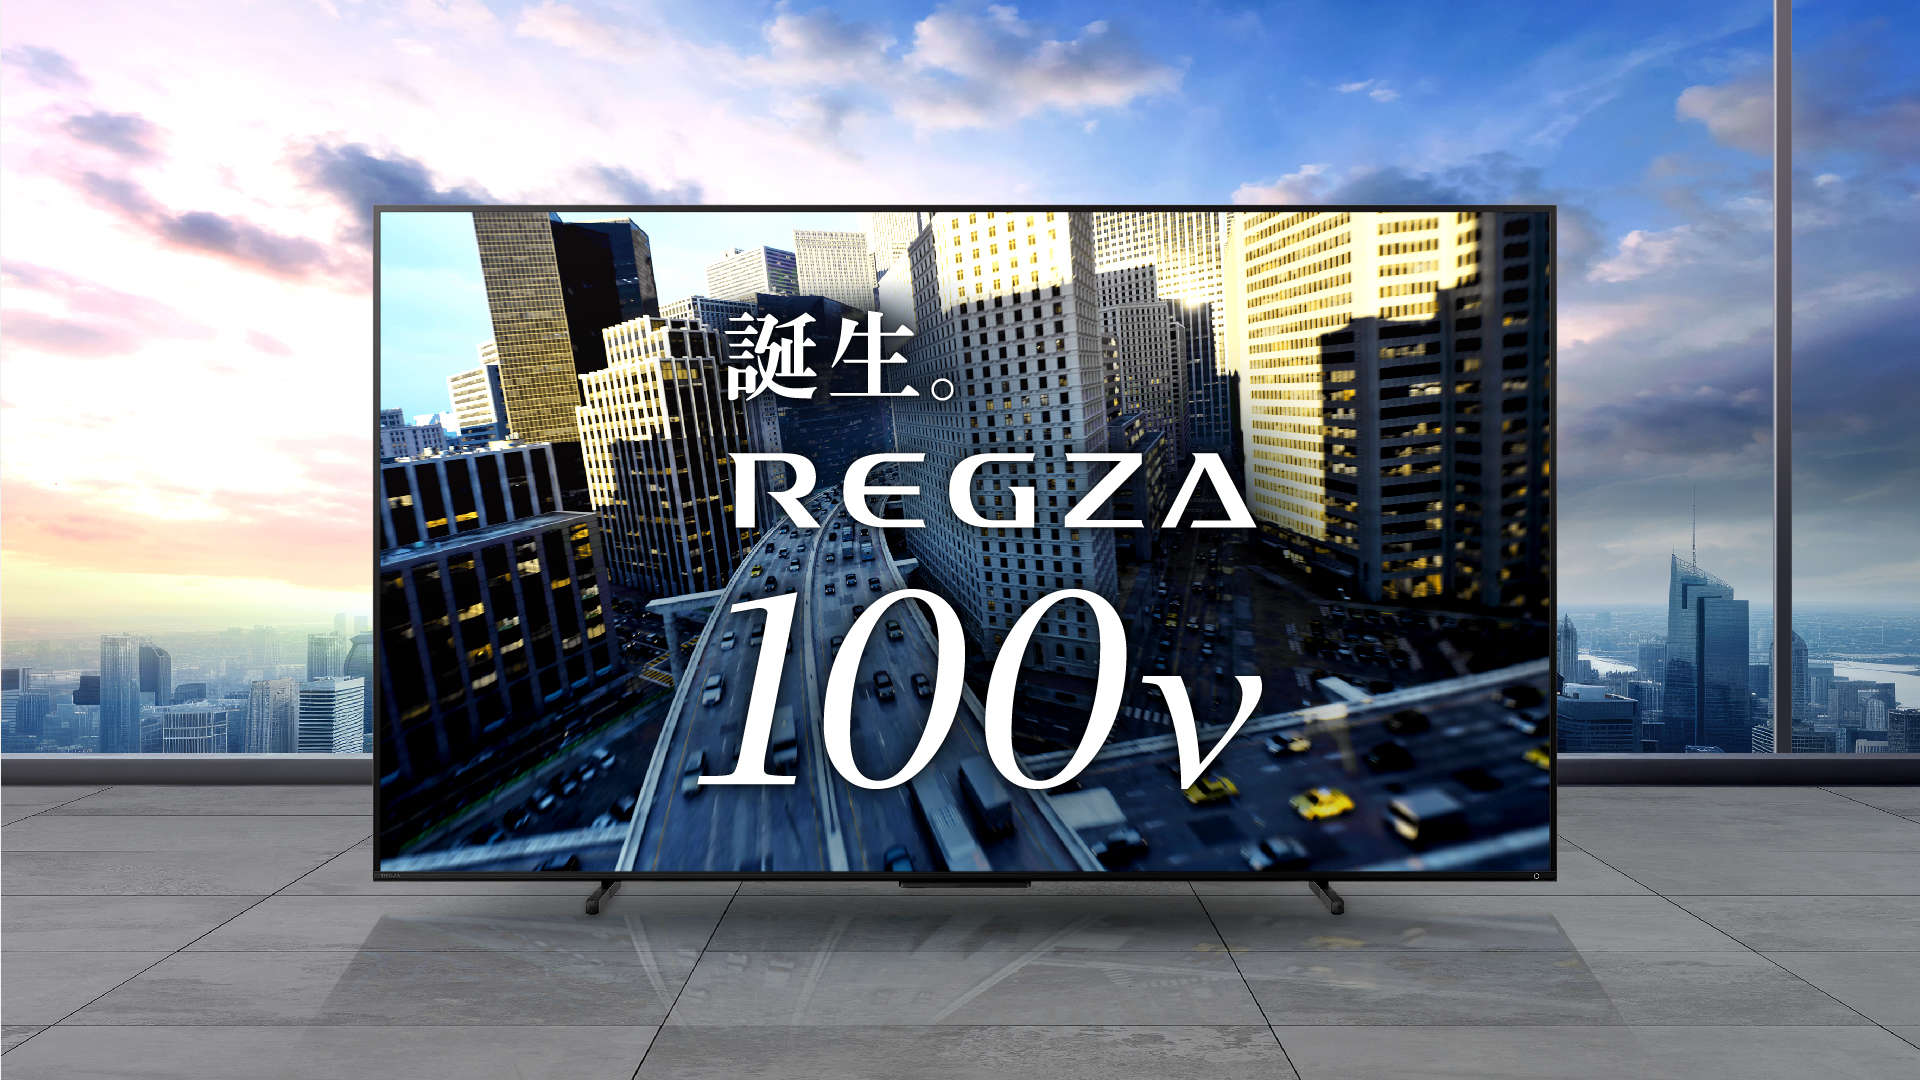 www.regza.com